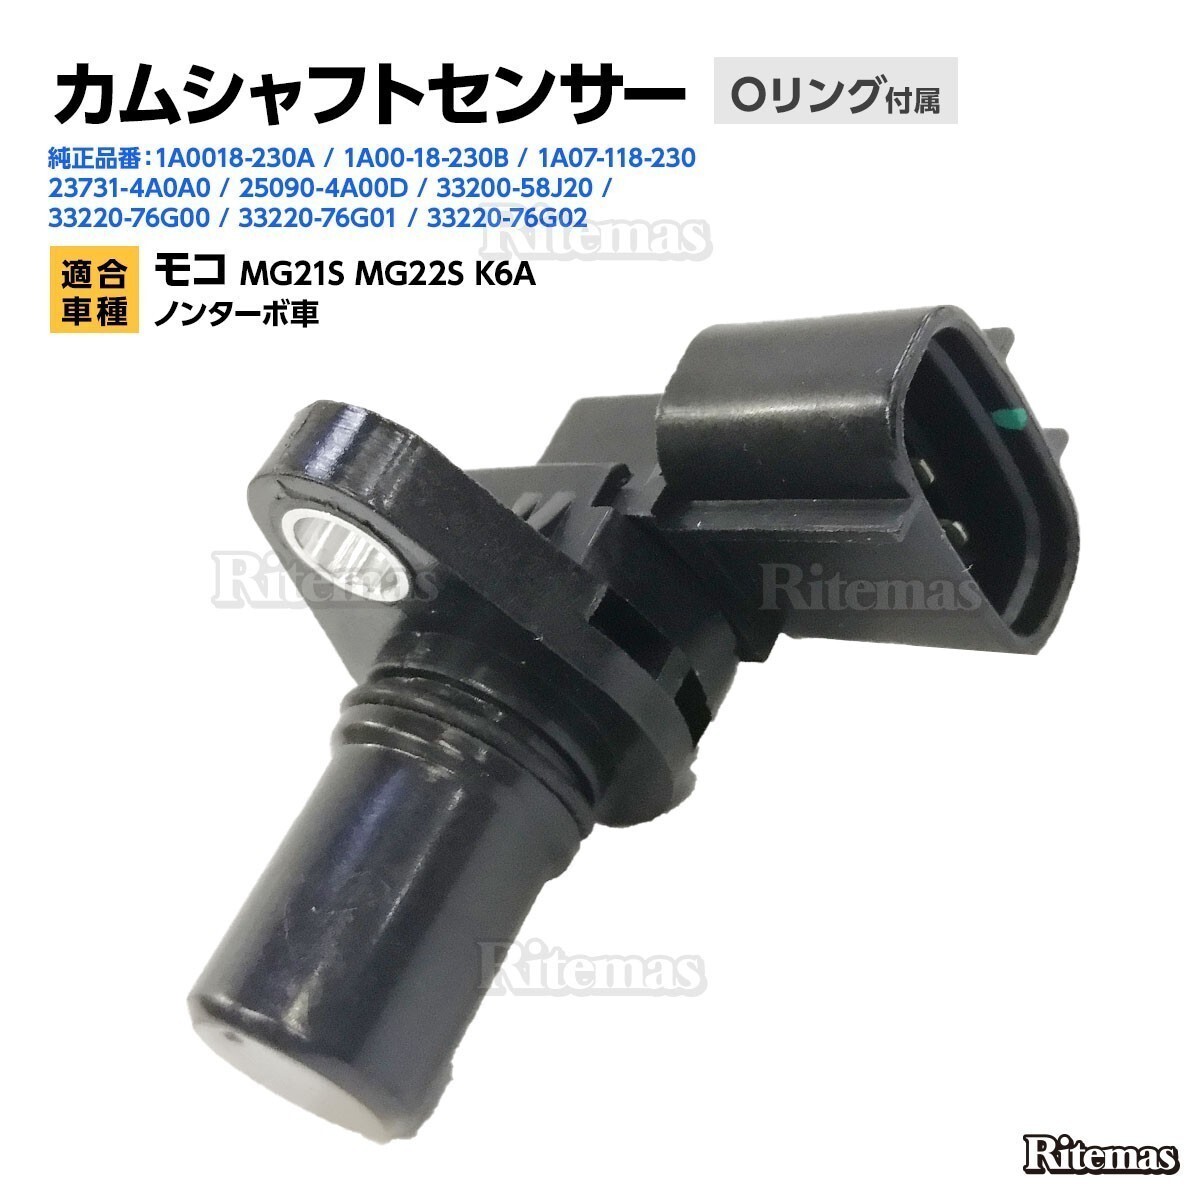  cam position sensor Nissan Moco MG21S MG22S K6A non-turbo car cam sensor / camshaft sensor 25090-4A00D 23731-4A0A0